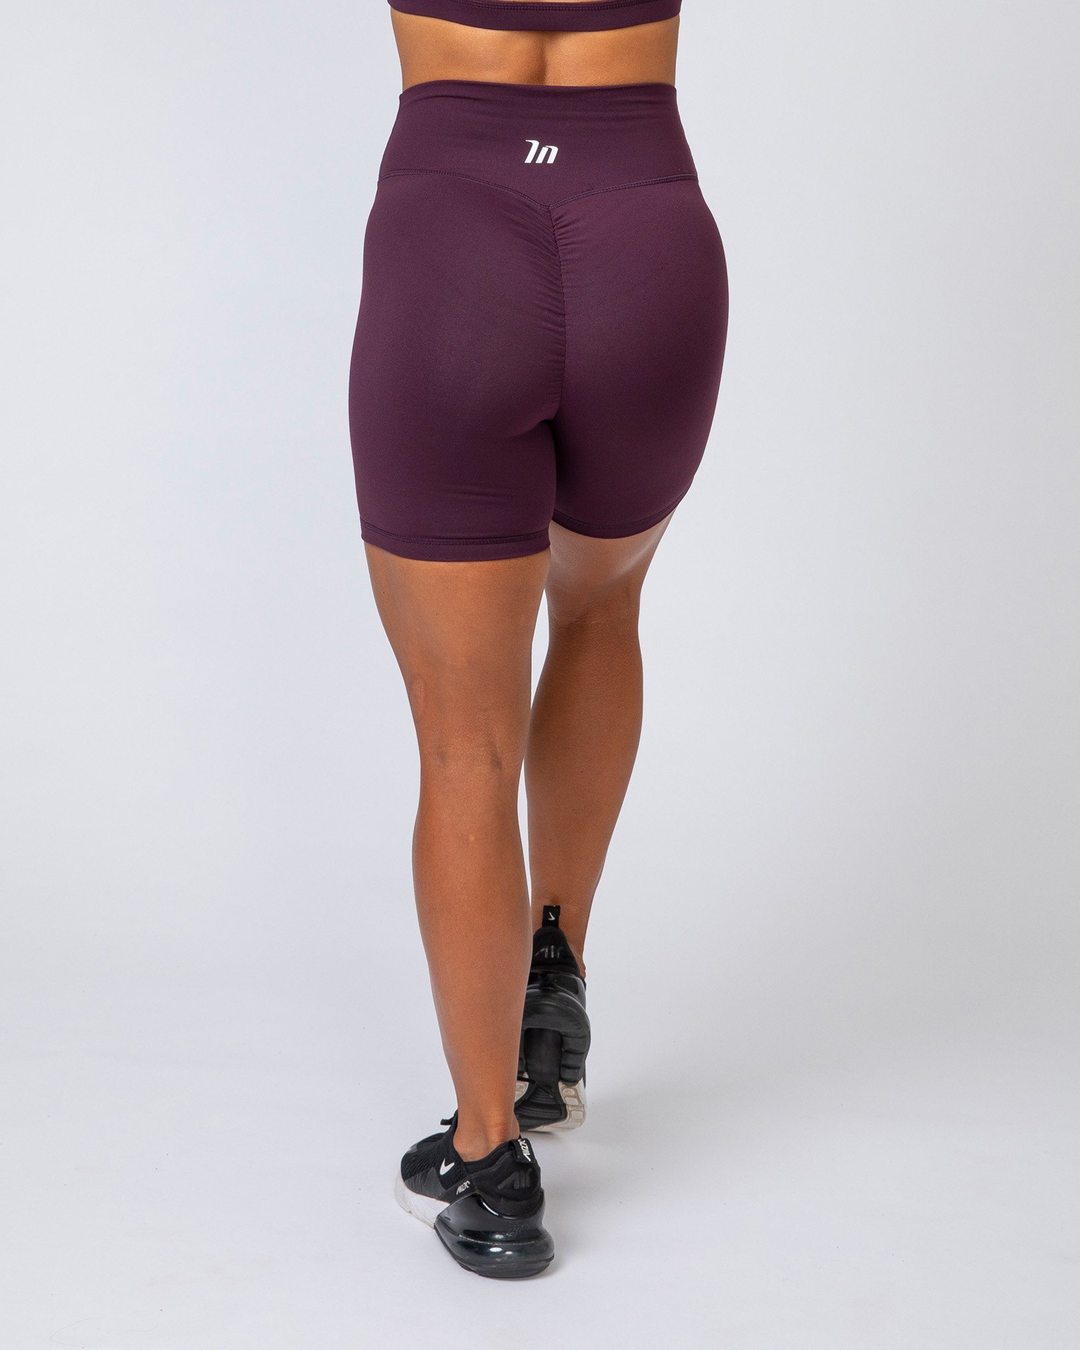 musclenation Bike Shorts - Royal Purple